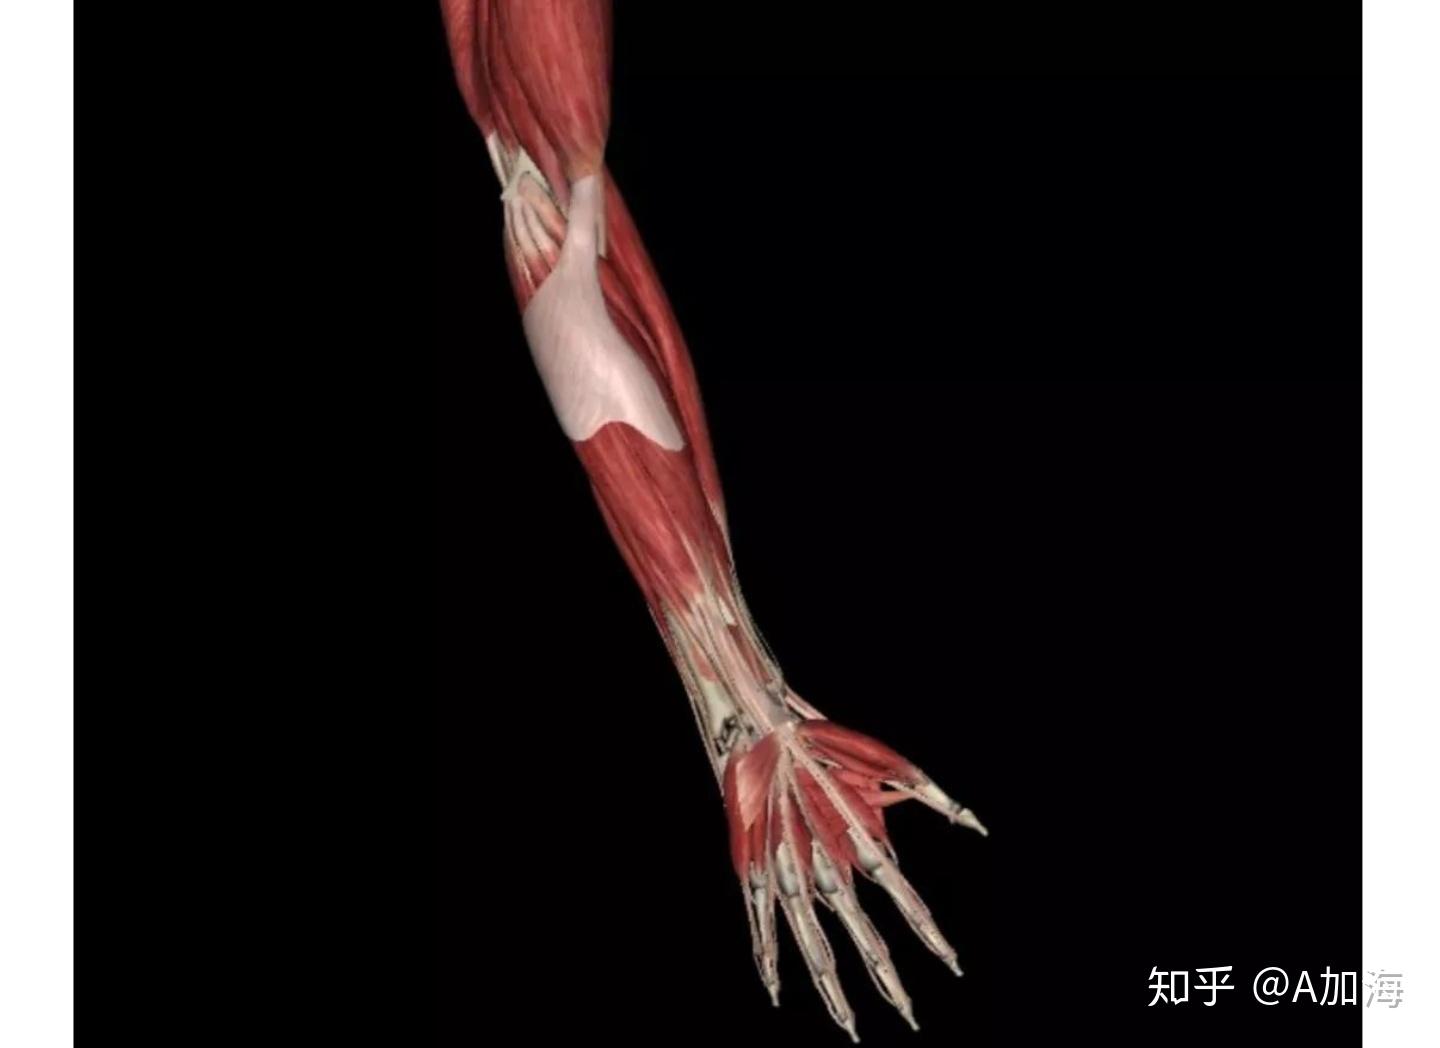 PBR次世代 手臂肌肉 大臂 小臂 肌肉 韧带 解剖 剖面 手指 骨骼 人体 器官 医疗 医学 医用-cg模型免费下载-CG99